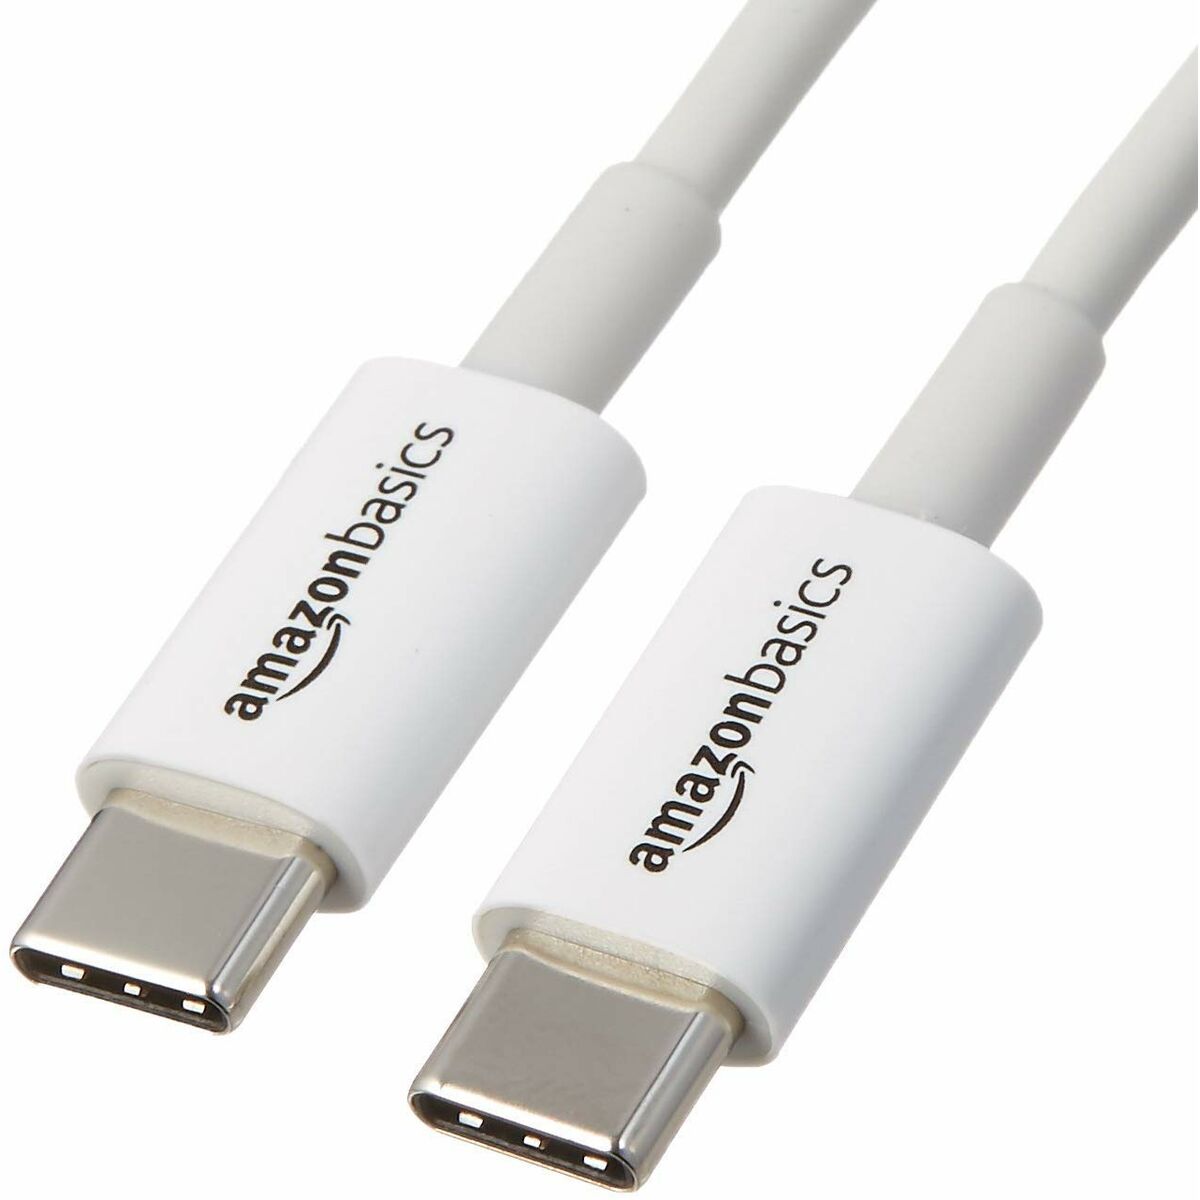 Cable USB C Amazon Basics White (Refurbished A+)